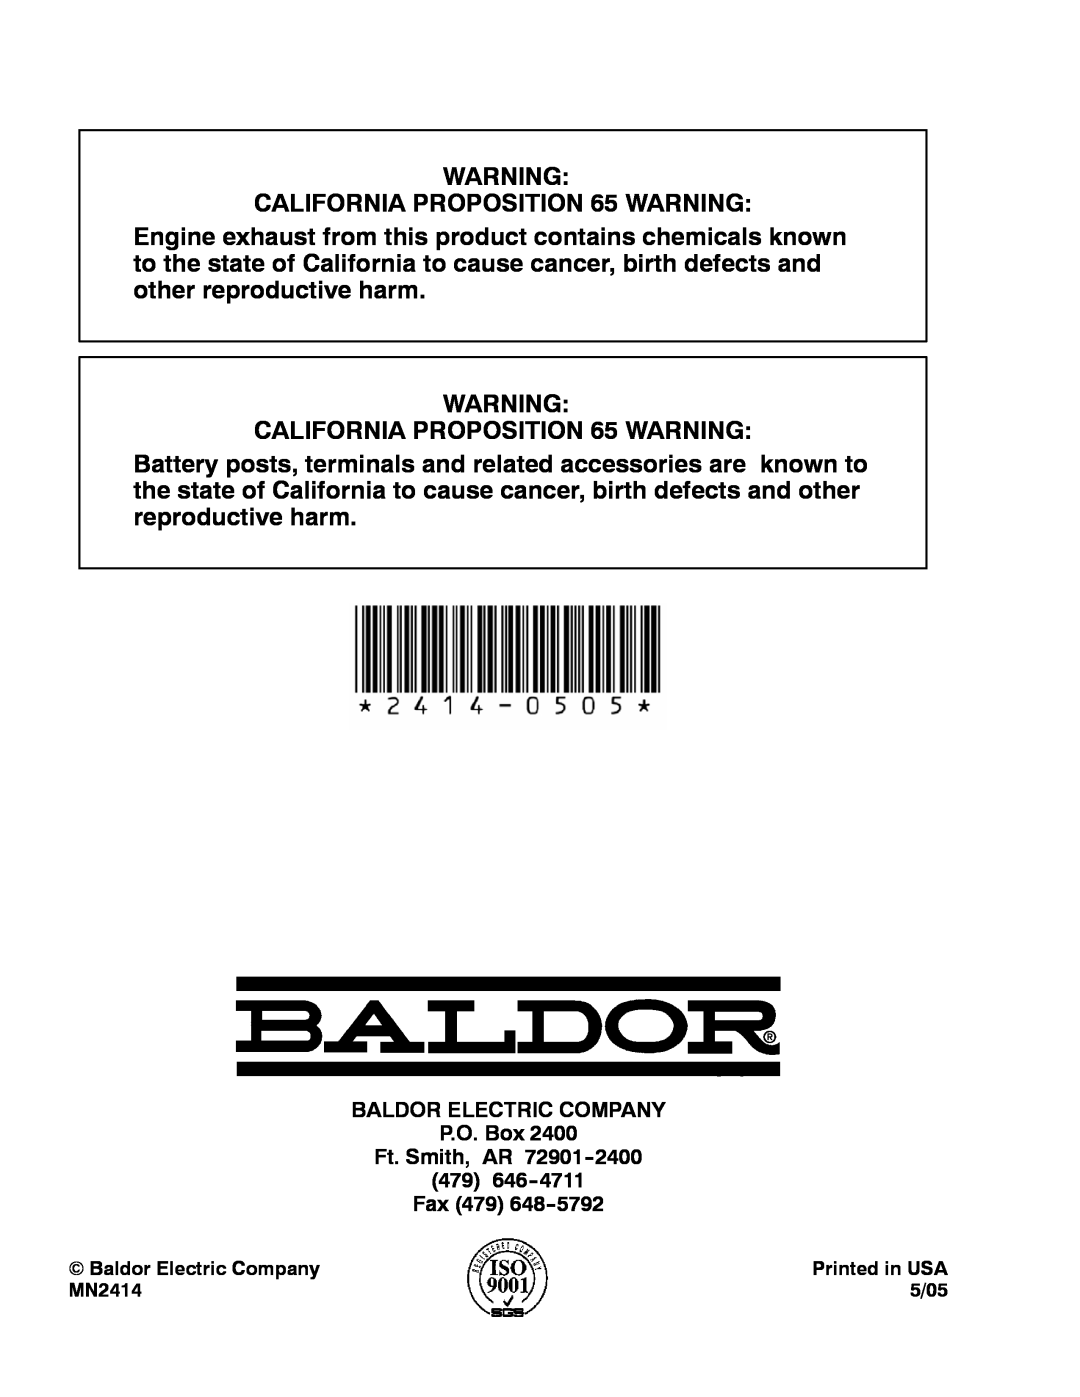 Baldor DG3E BALDOR ELECTRIC COMPANY P.O. Box Ft. Smith, AR 479 Fax 479, Baldor Electric Company, Printed in USA, MN2414 